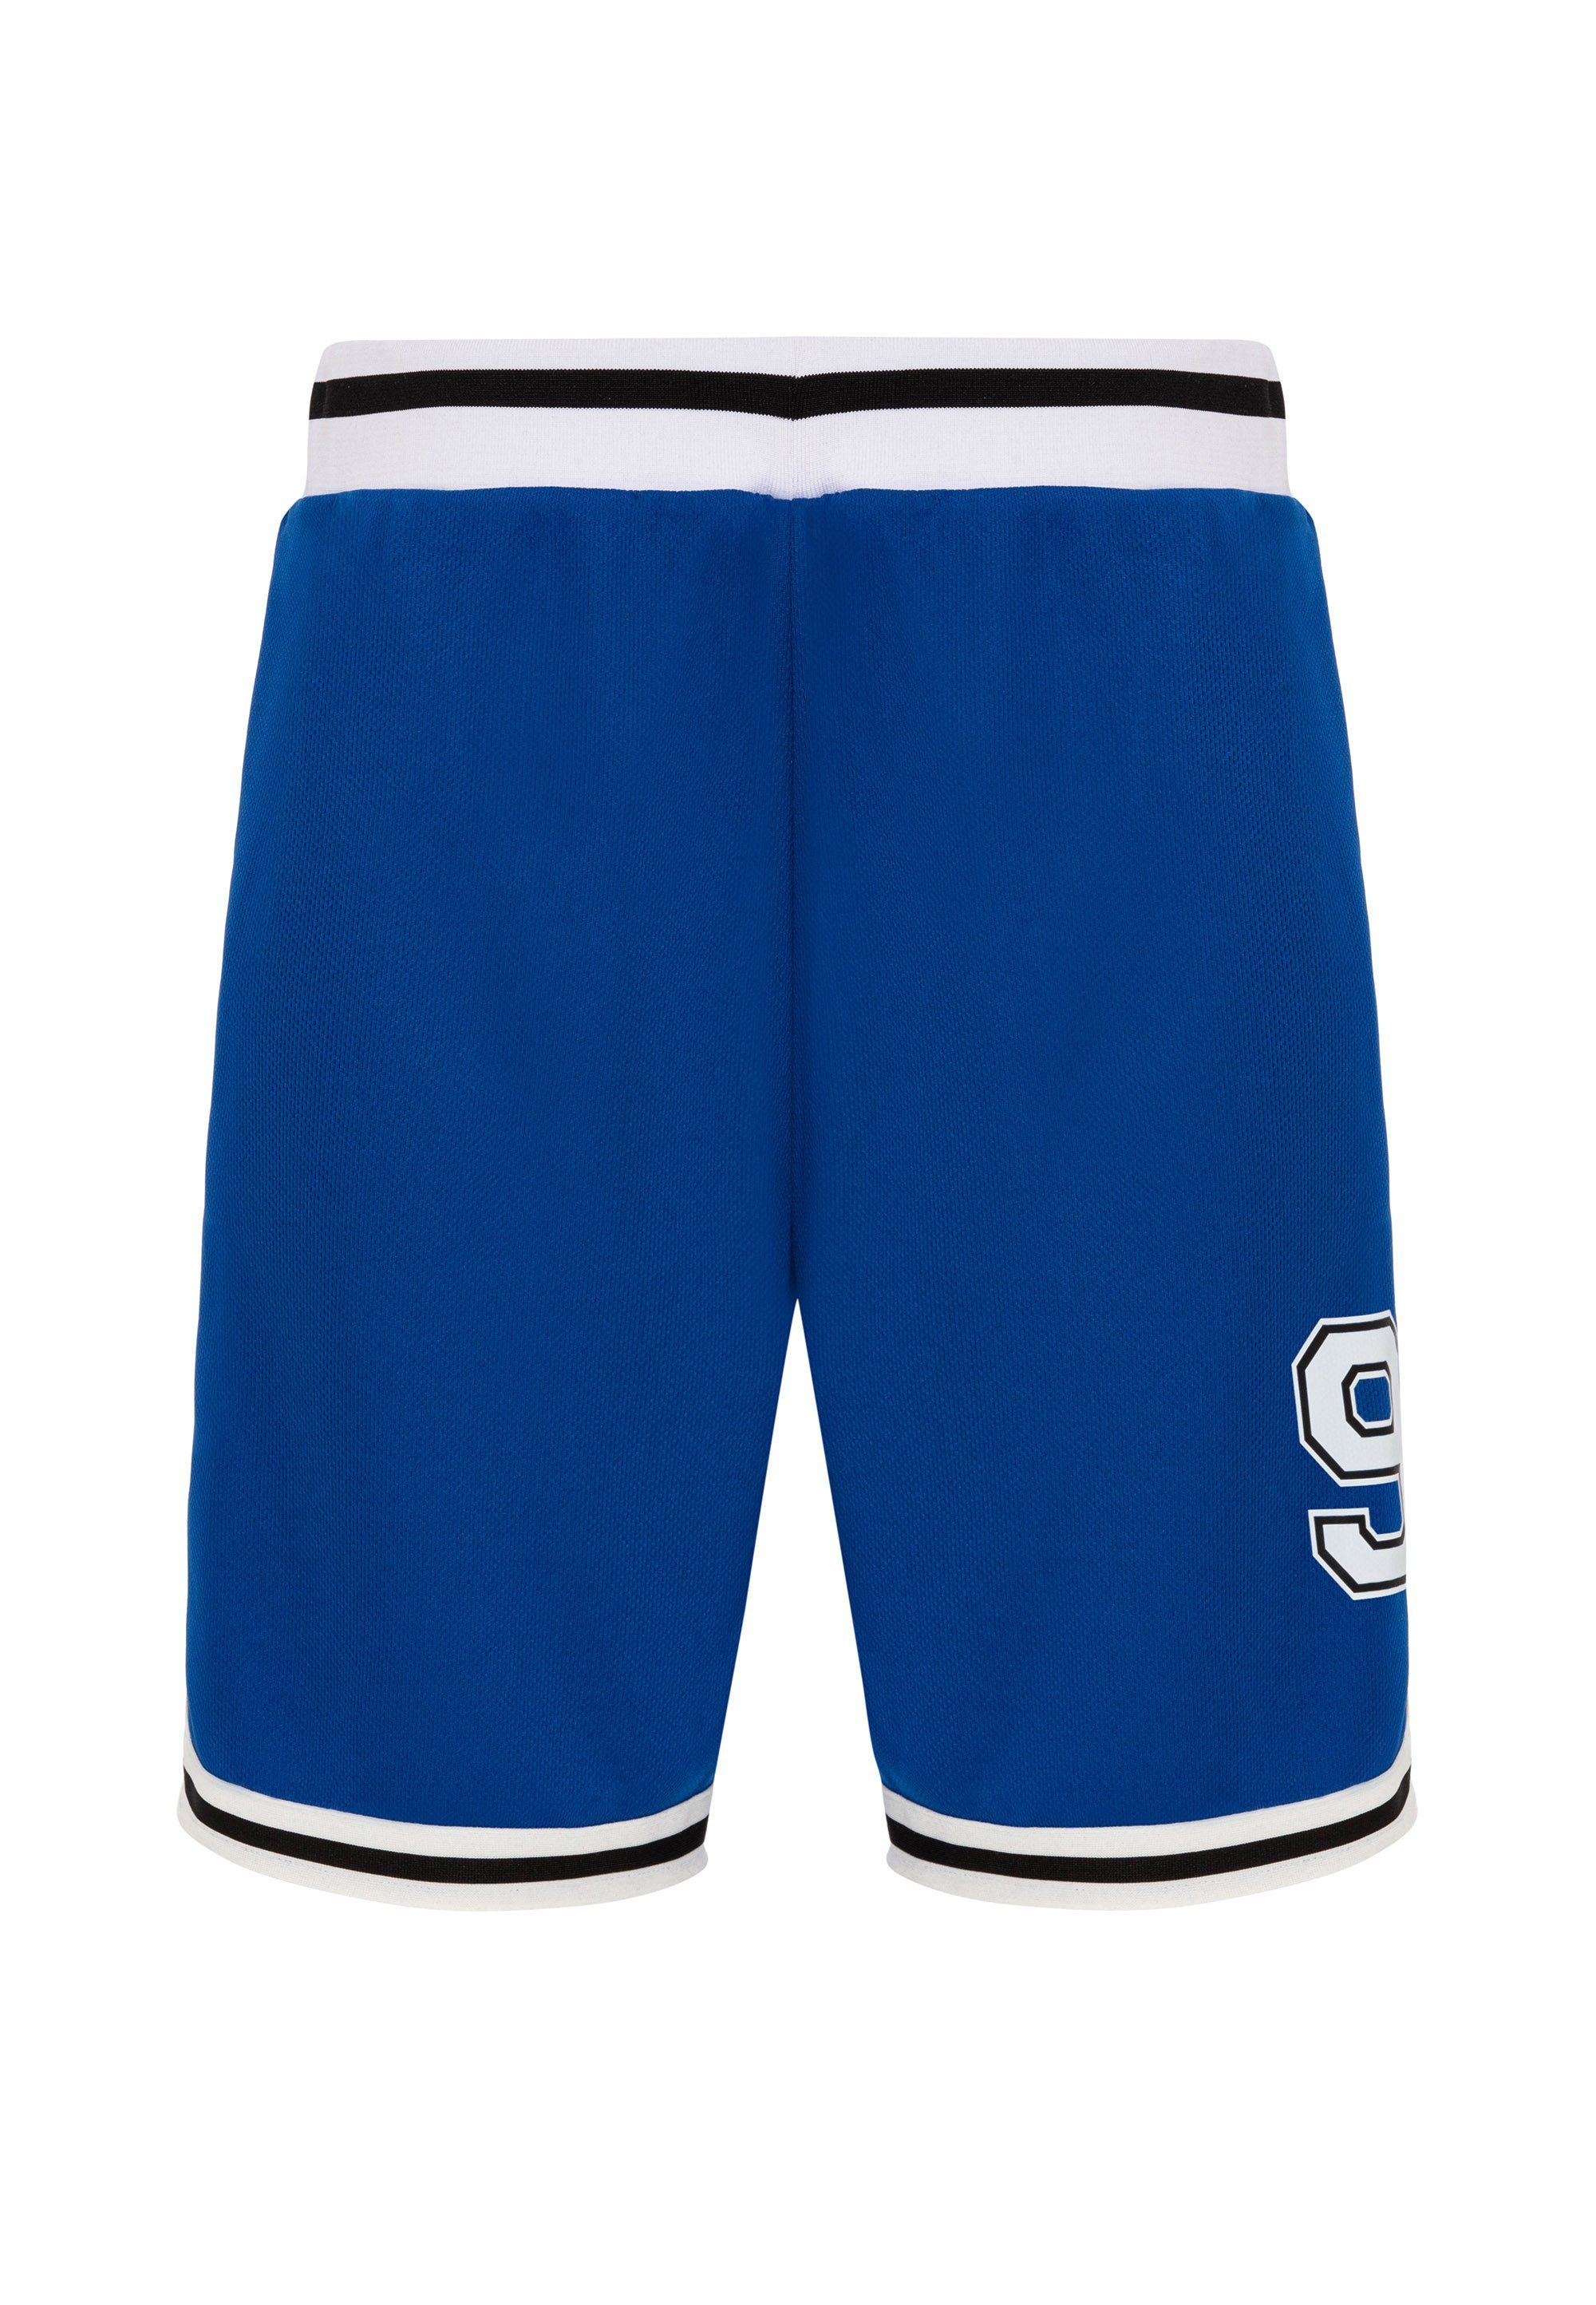 RedBridge blau-weiß lässigen Kontraststreifen mit Galeomaltande Shorts